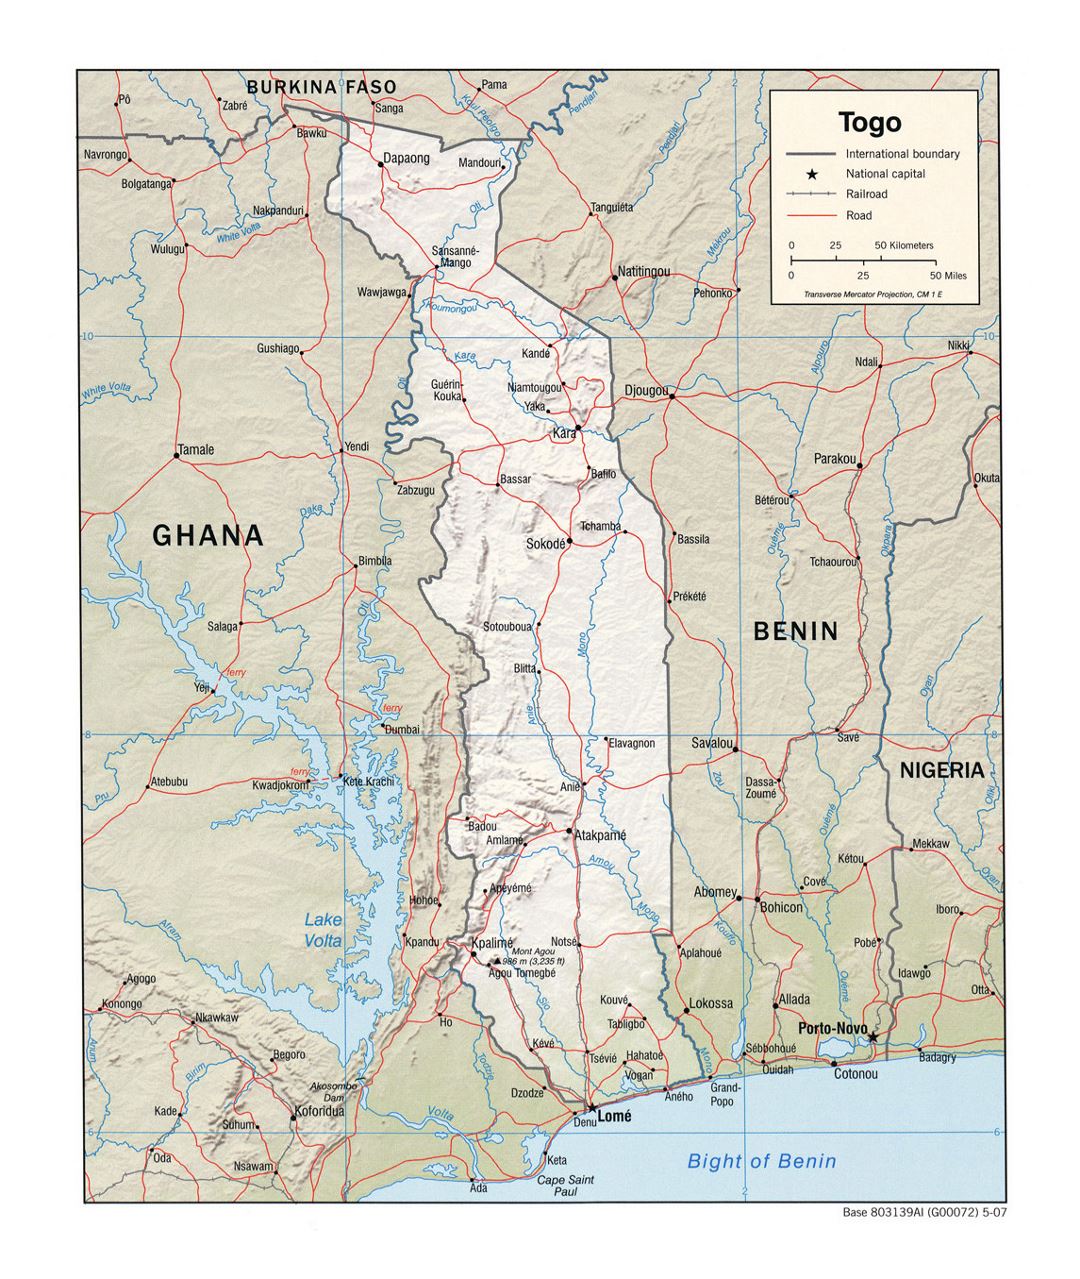 Детальная политическая карта Того с рельефом, дорогами, железными дорогами и крупными городами - 2007